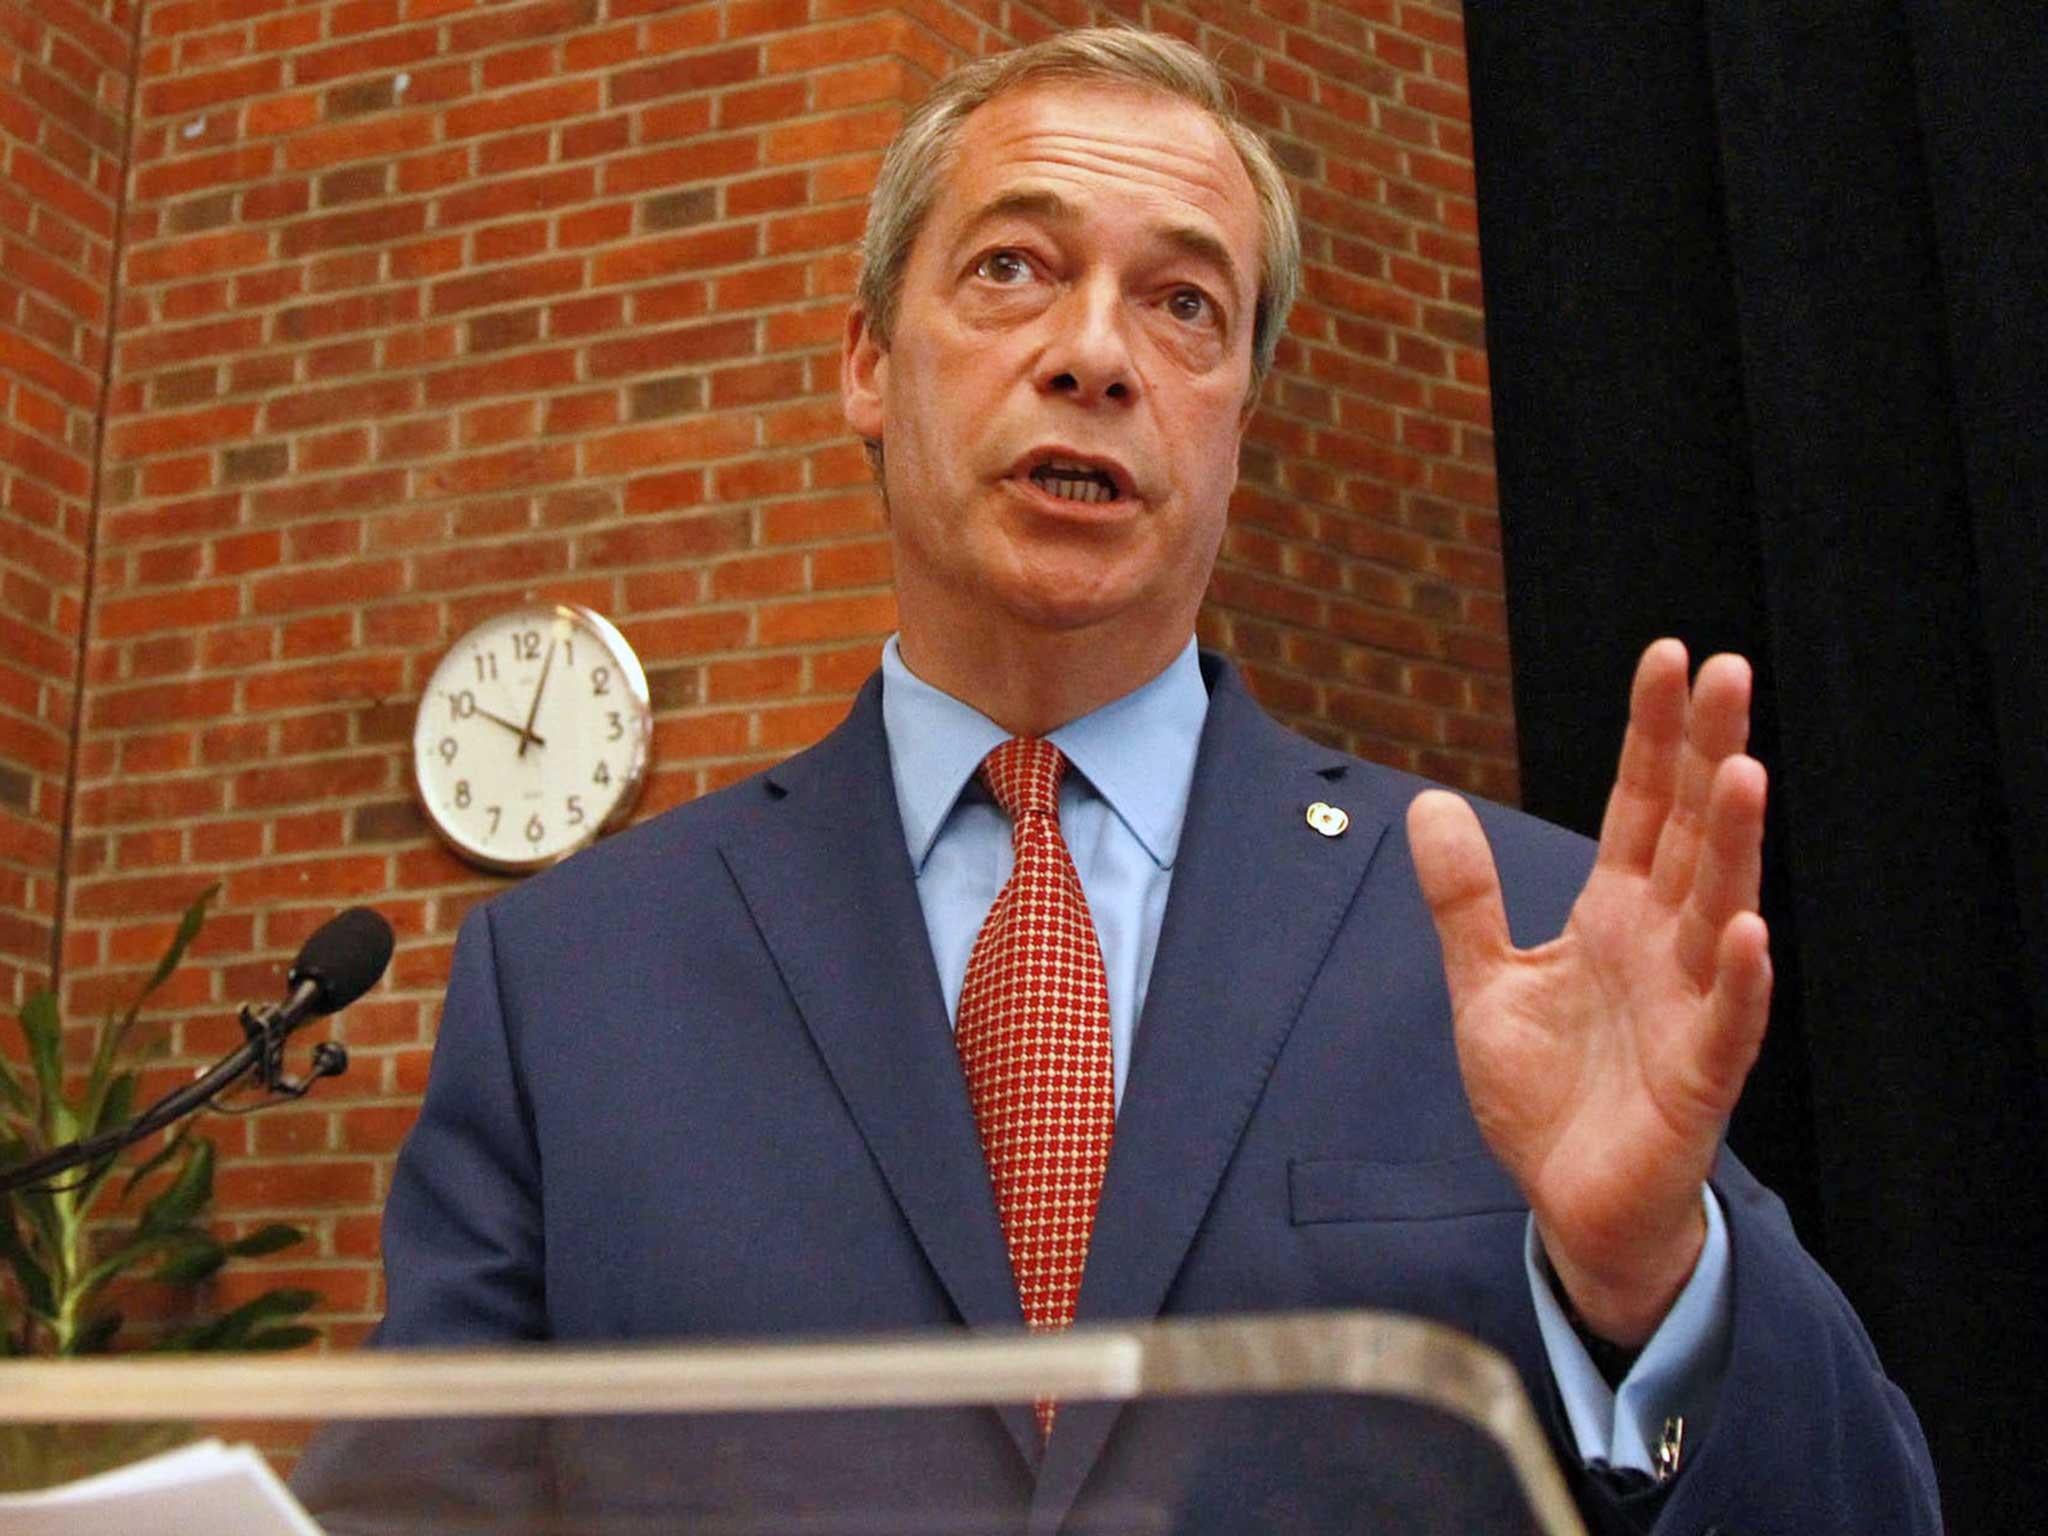 Nigel Farage is no longer Ukip leader